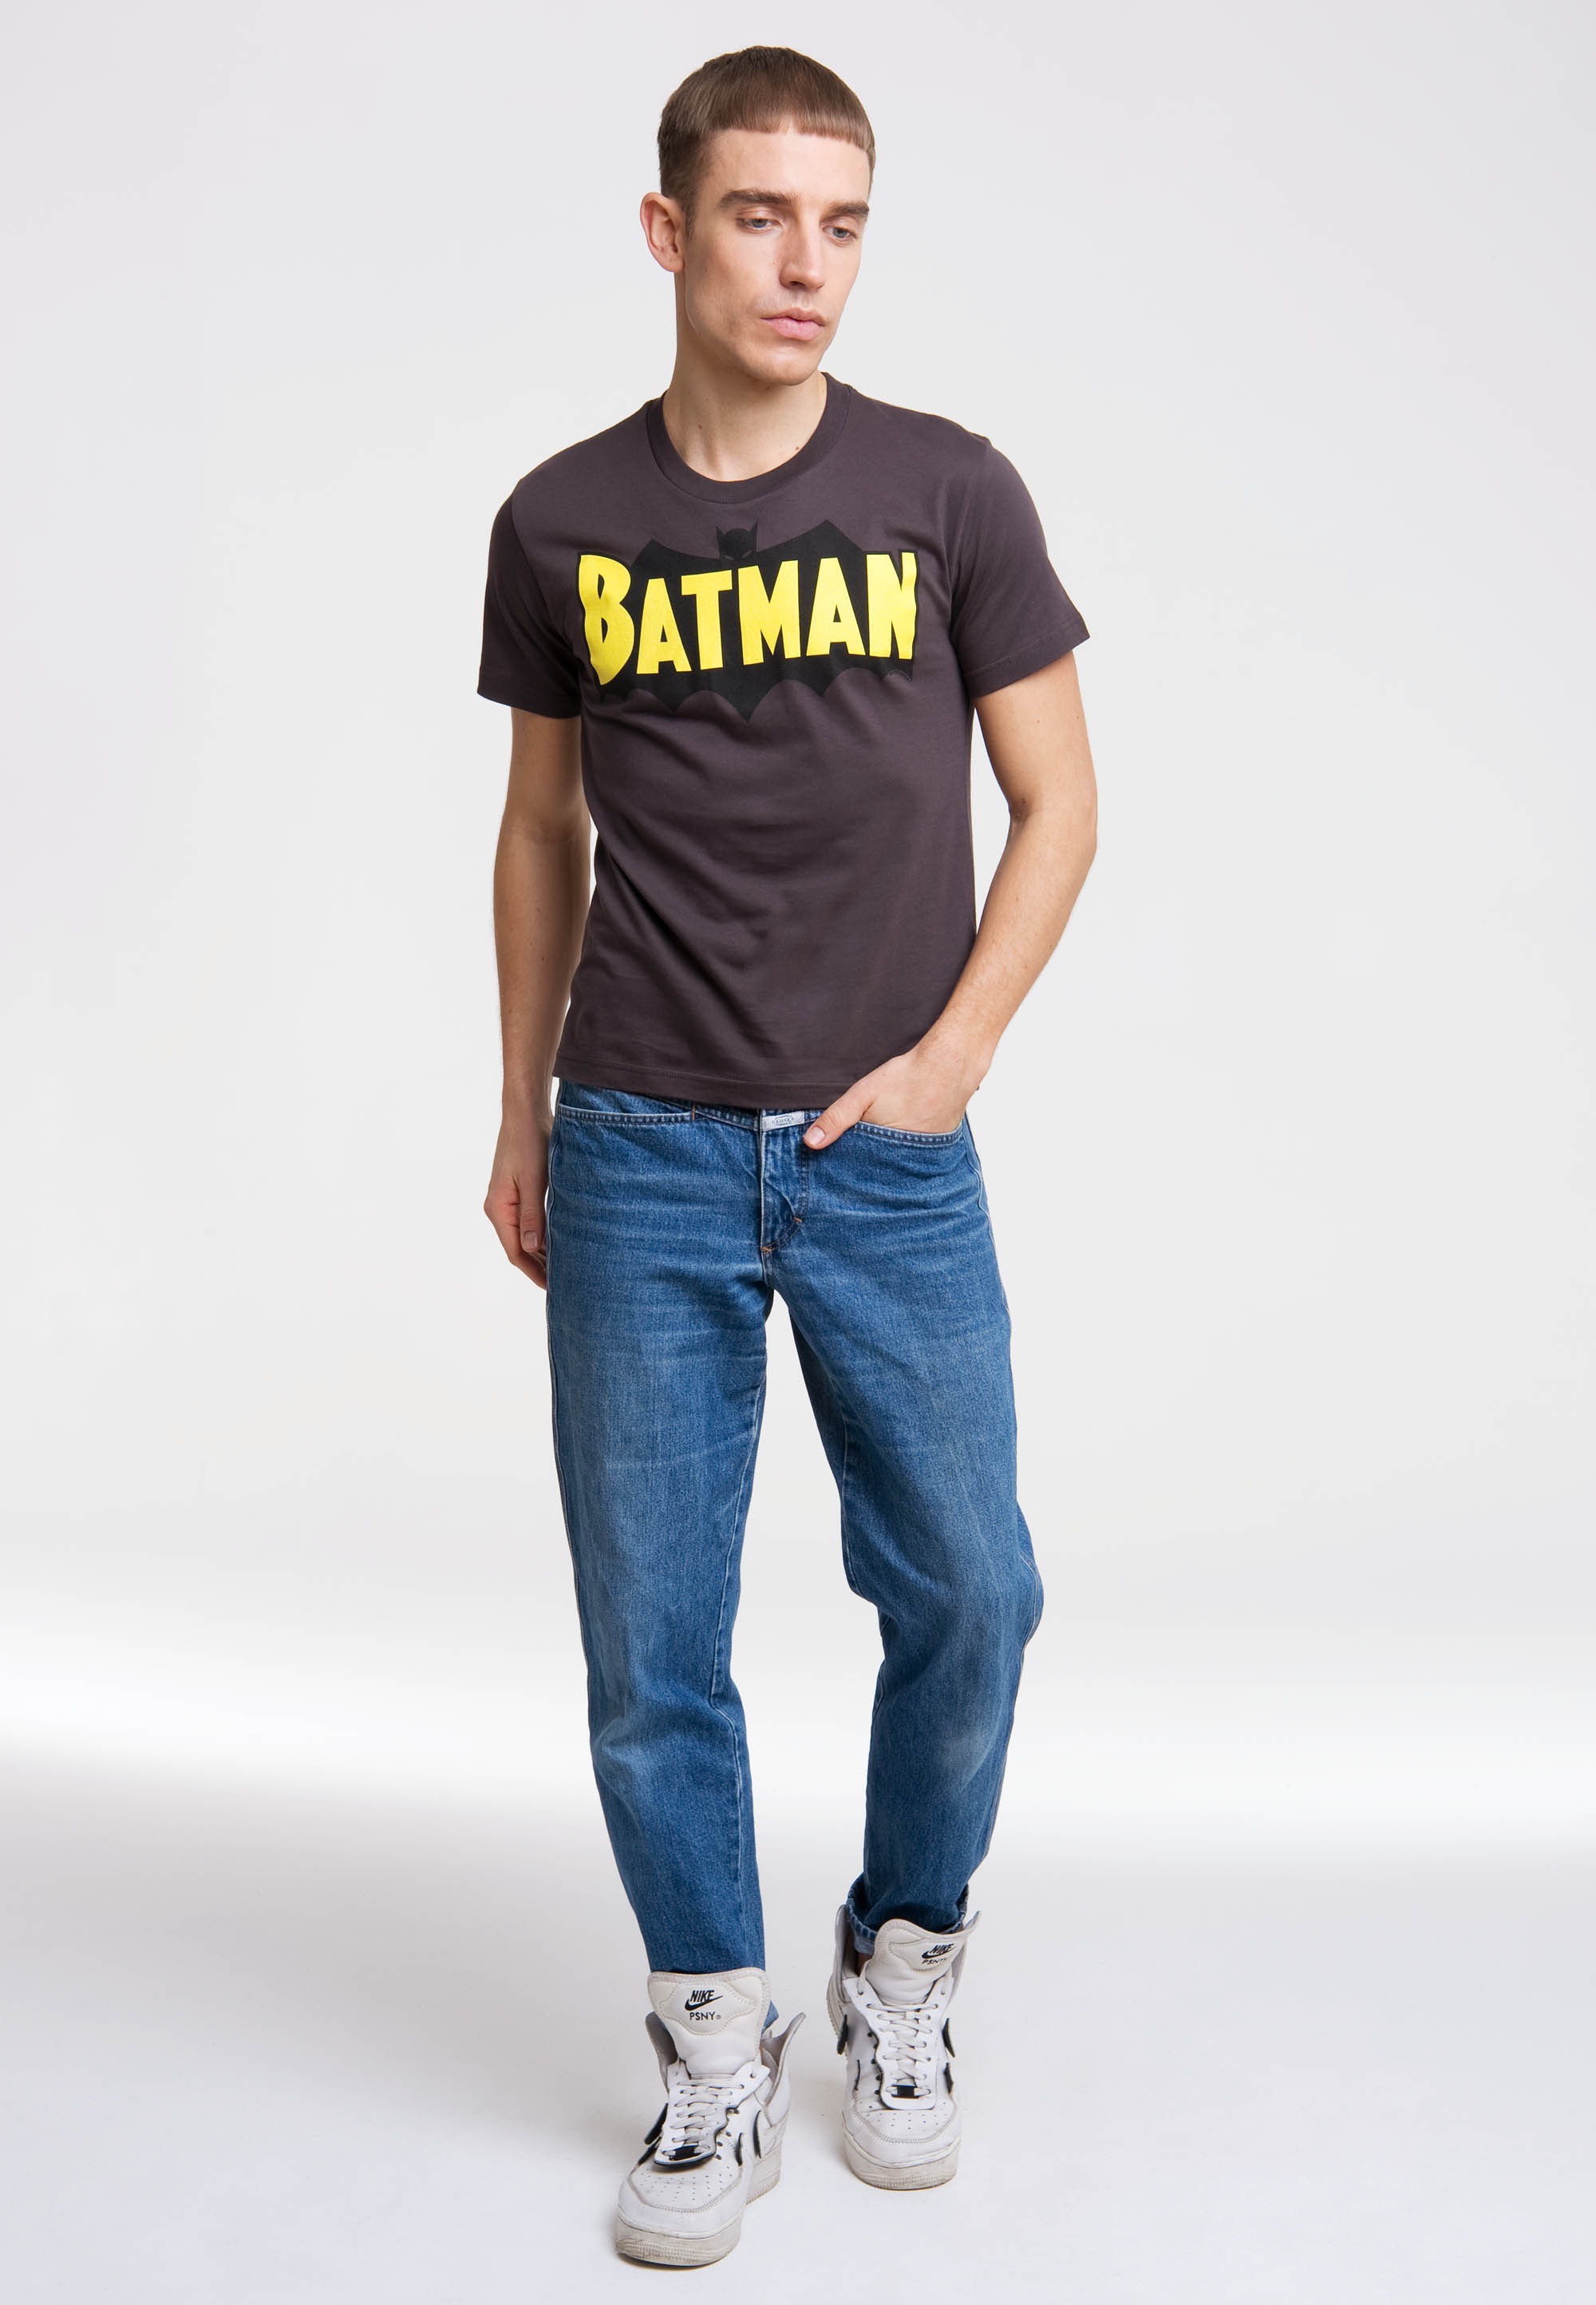 »BATMAN LOGOSHIRT | BAUR mit kaufen coolem T-Shirt - WINGS«, ▷ Superhelden-Logo